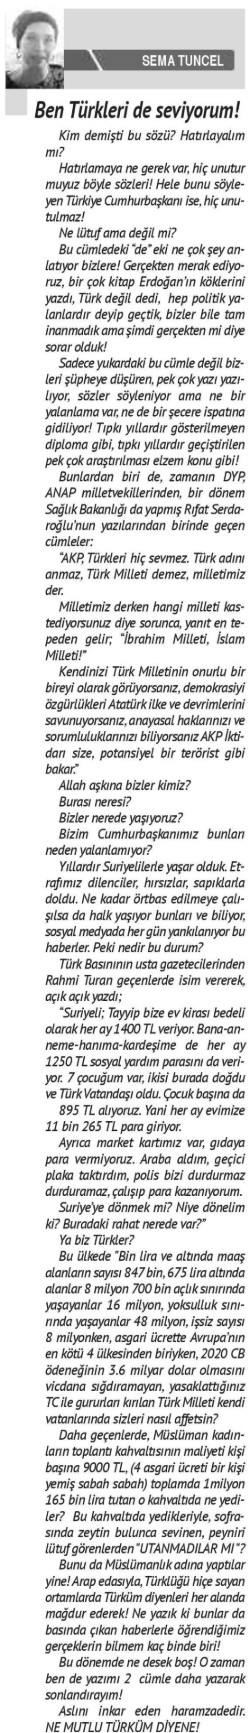 Bizim Anadolu Gazetesi, January 1, 2020